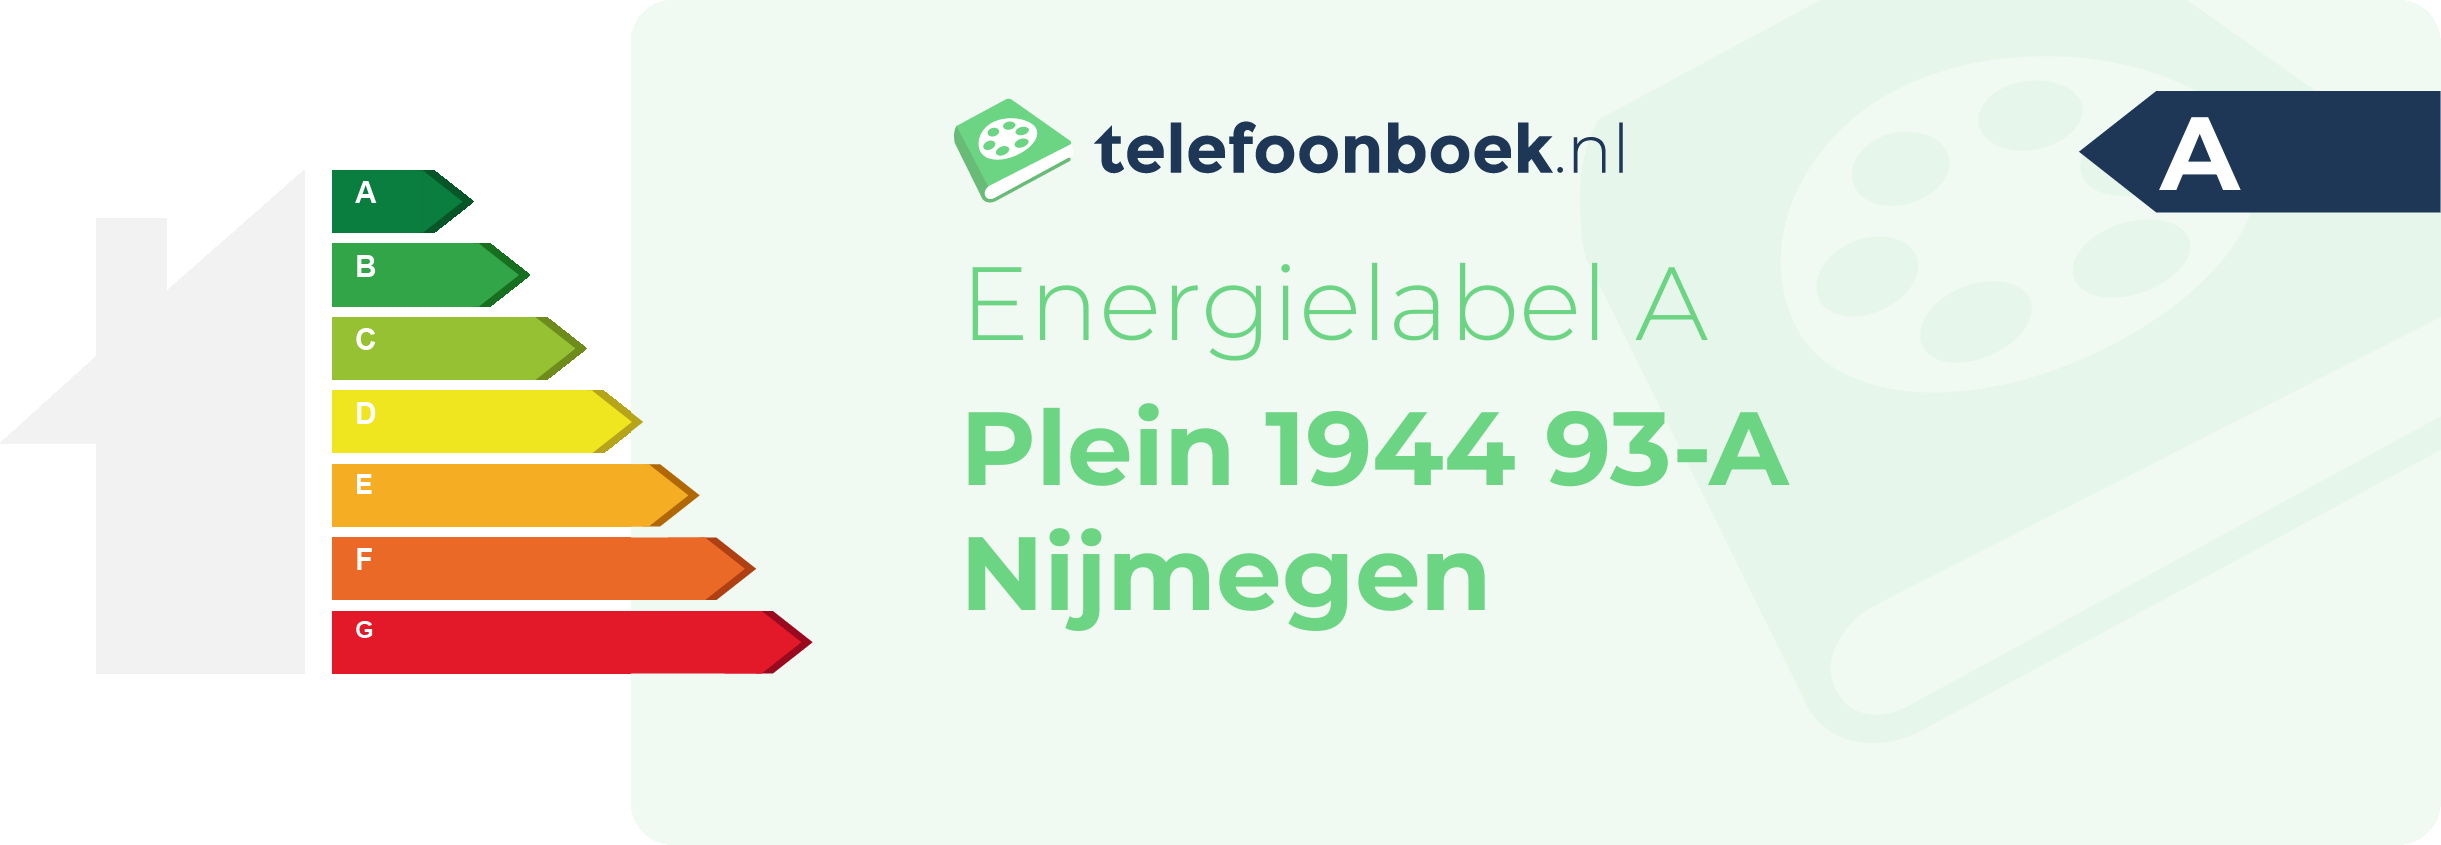 Energielabel Plein 1944 93-A Nijmegen